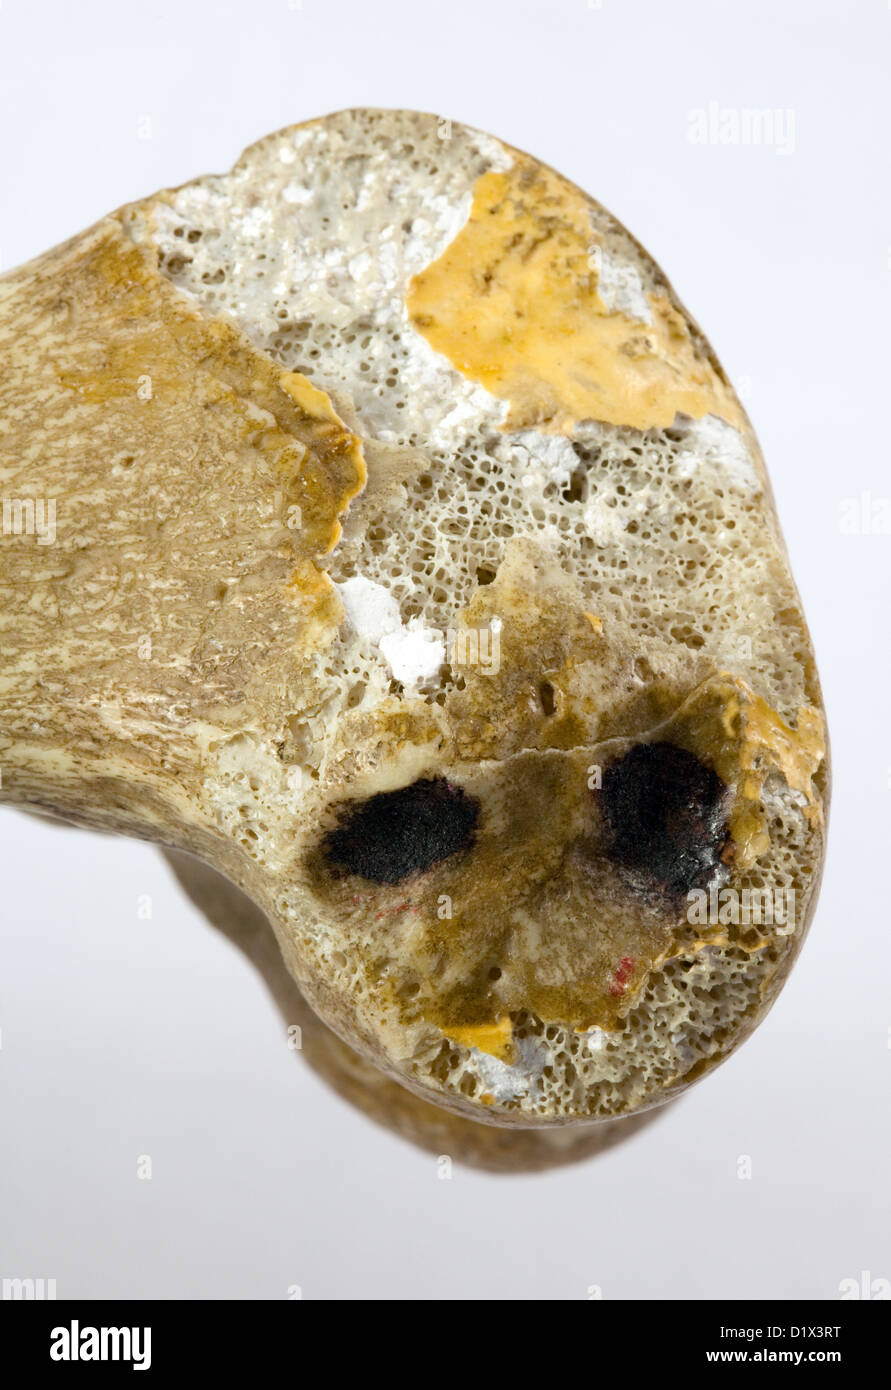 Un de près de l'extrémité inférieure d'un vrai humain fémur, ou os de la cuisse, de montrer ou d'os spongieux spongieux Banque D'Images